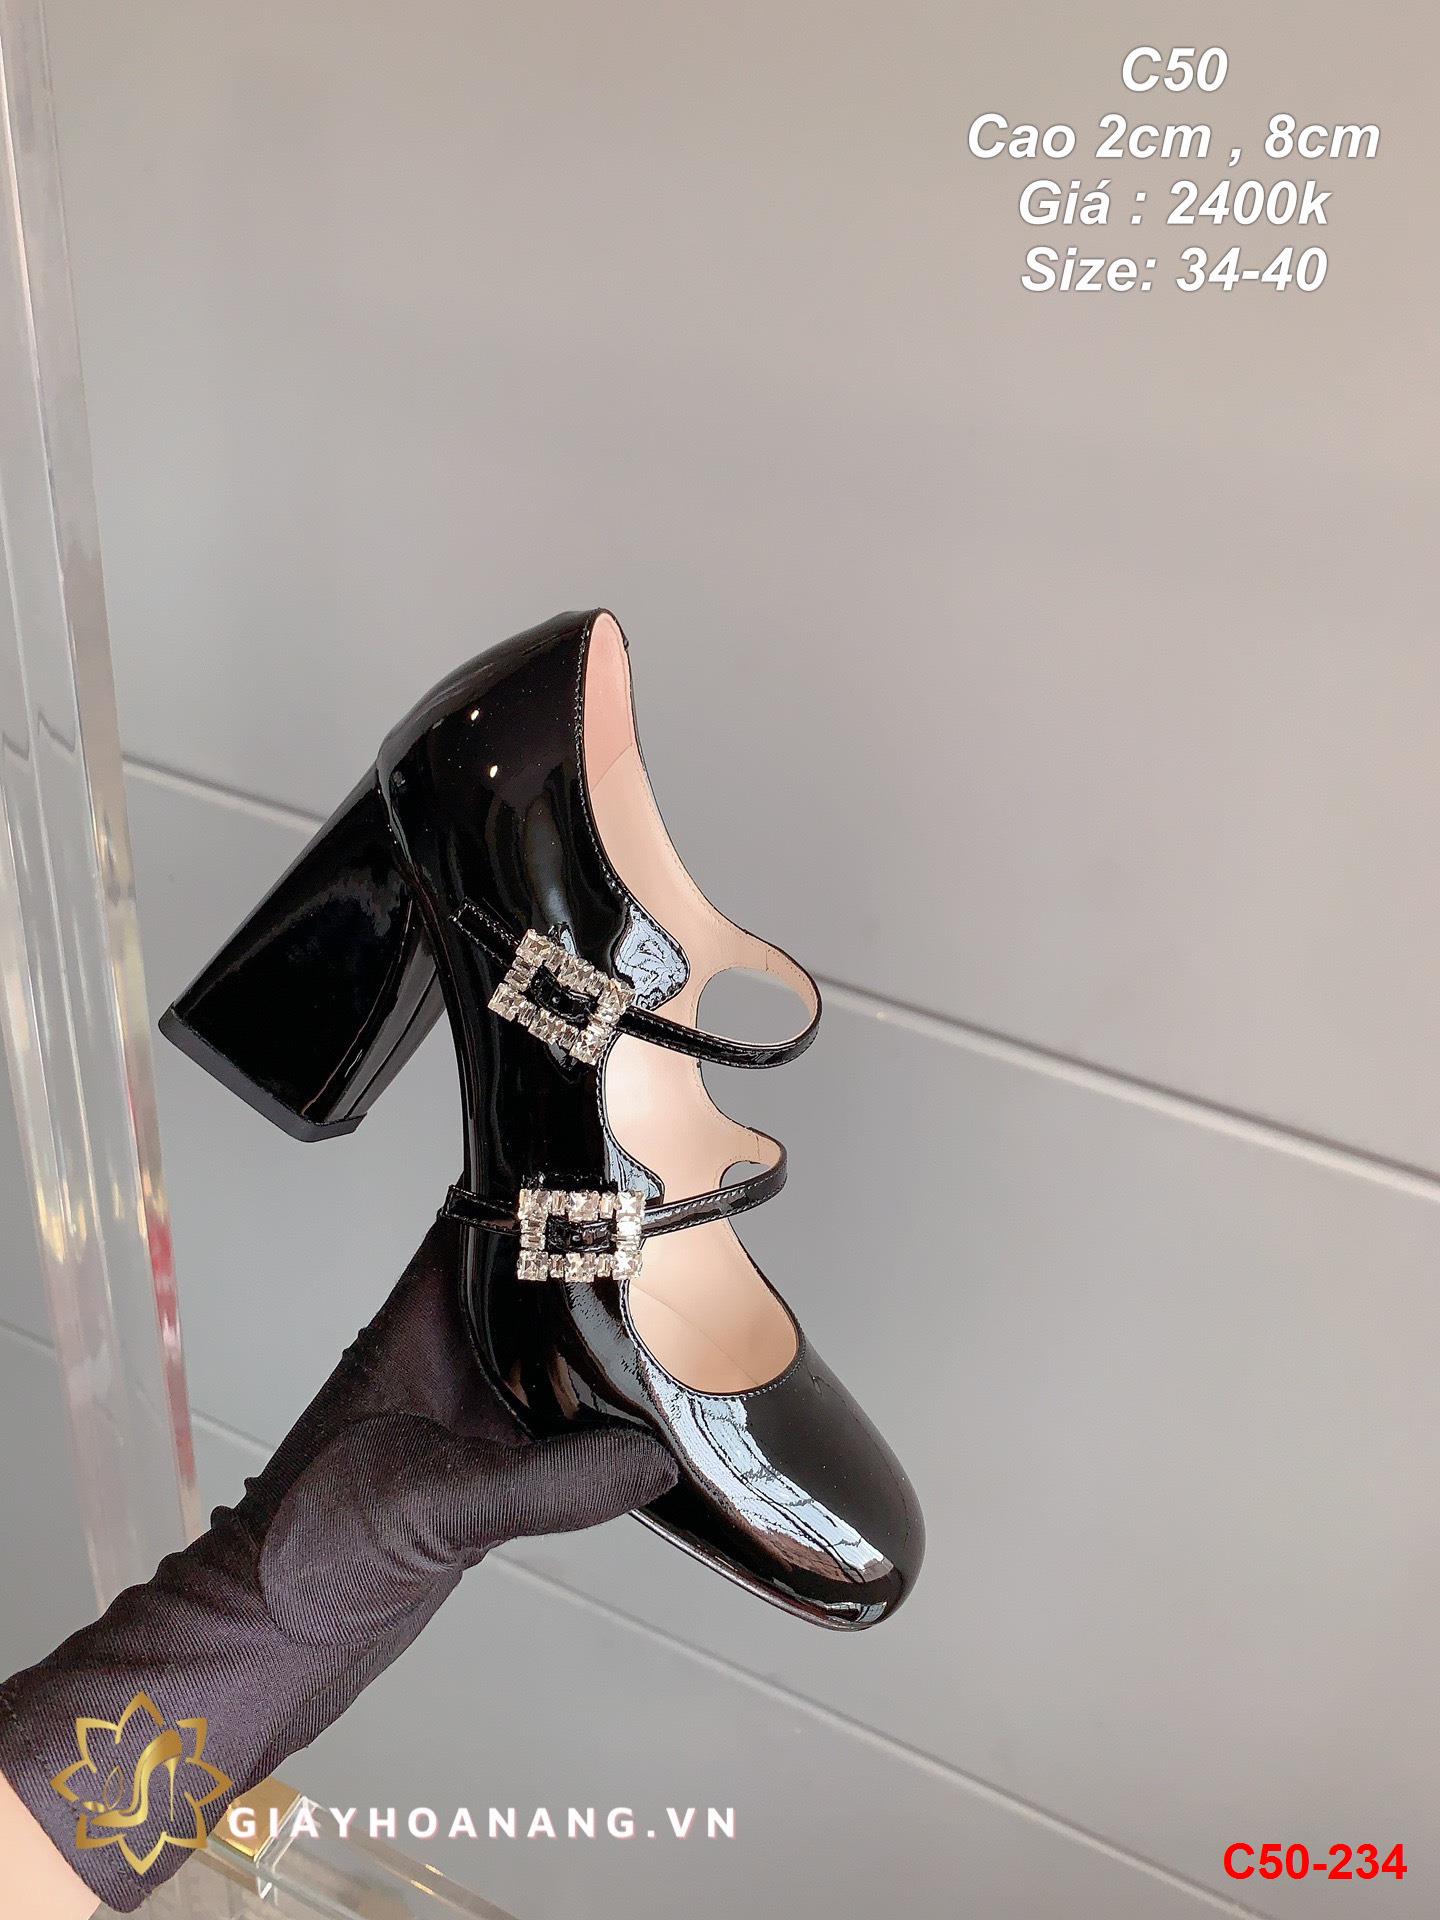 C50-234 Miu Miu giày cao 2cm , 8cm siêu cấp